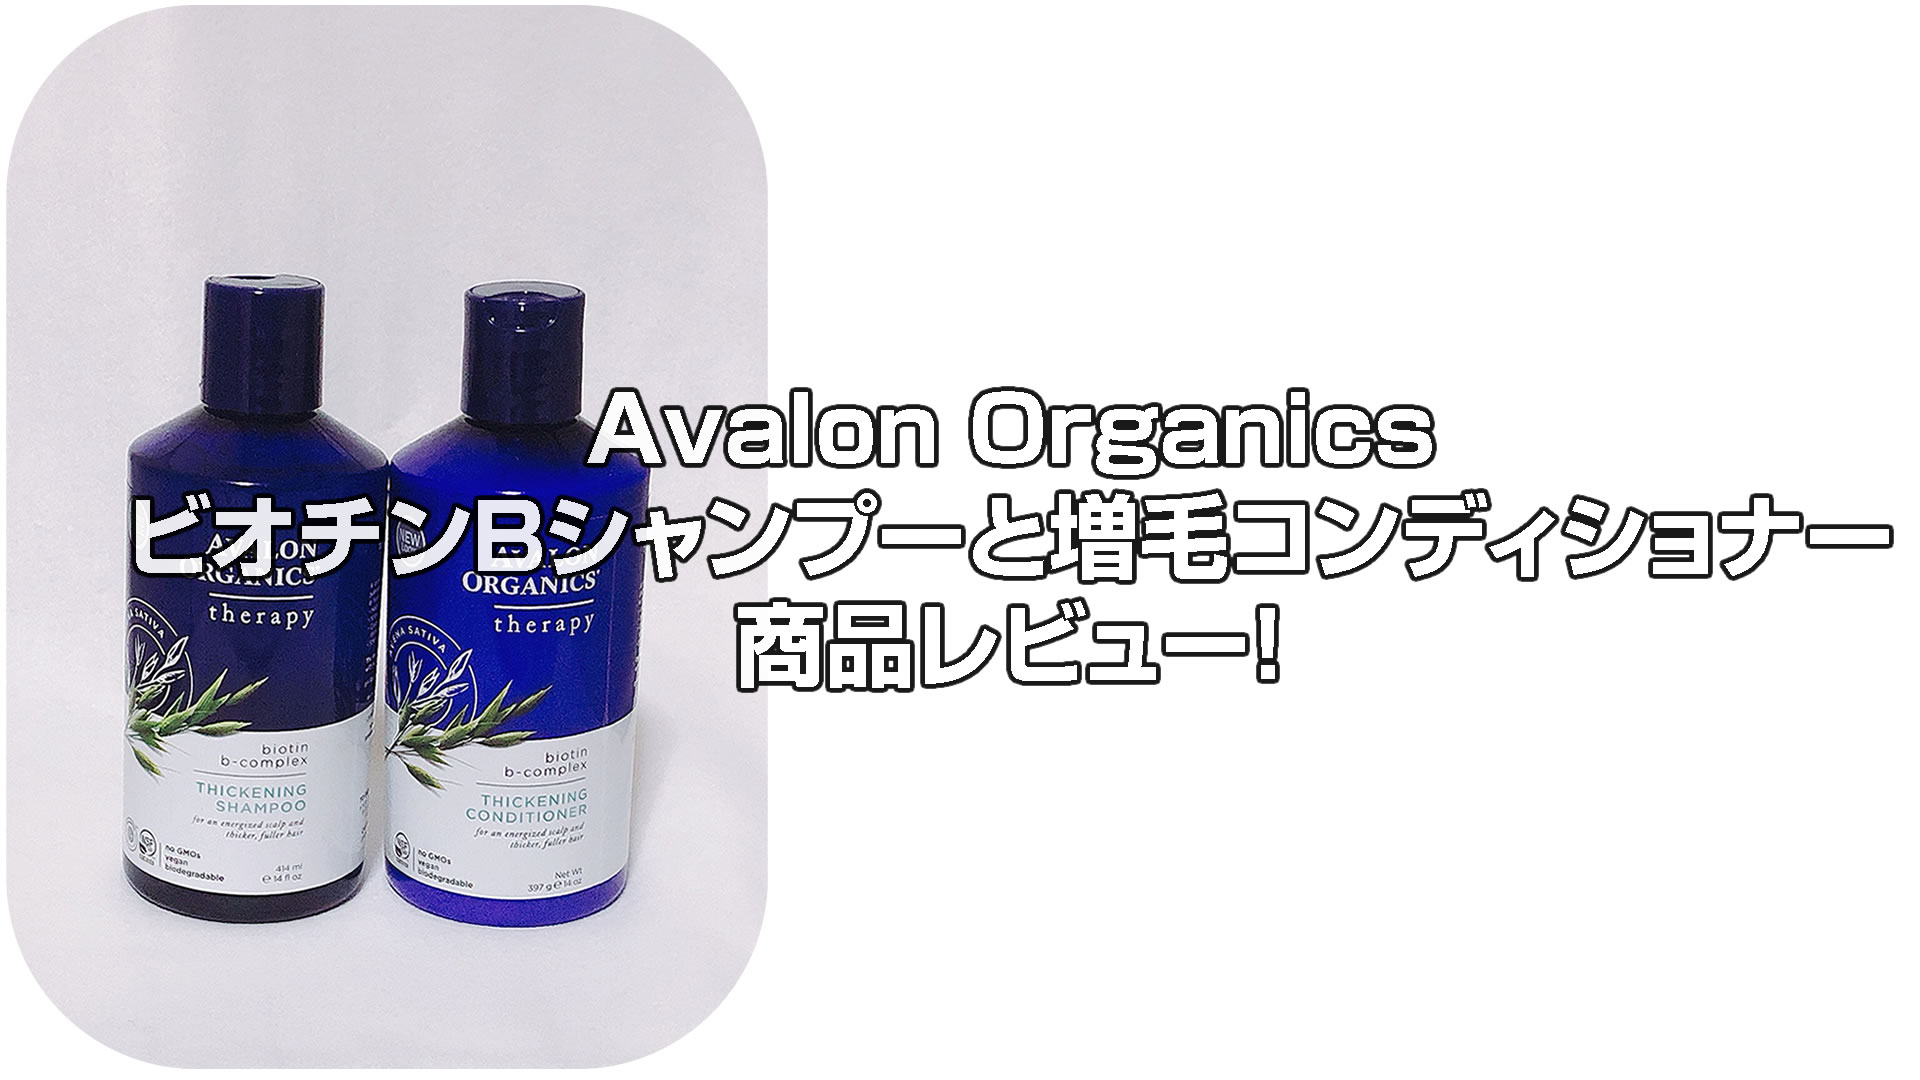 Avalon OrganicsビオチンBシャンプーと増毛コンディショナーでコシのない髪を強く！[iHerb]